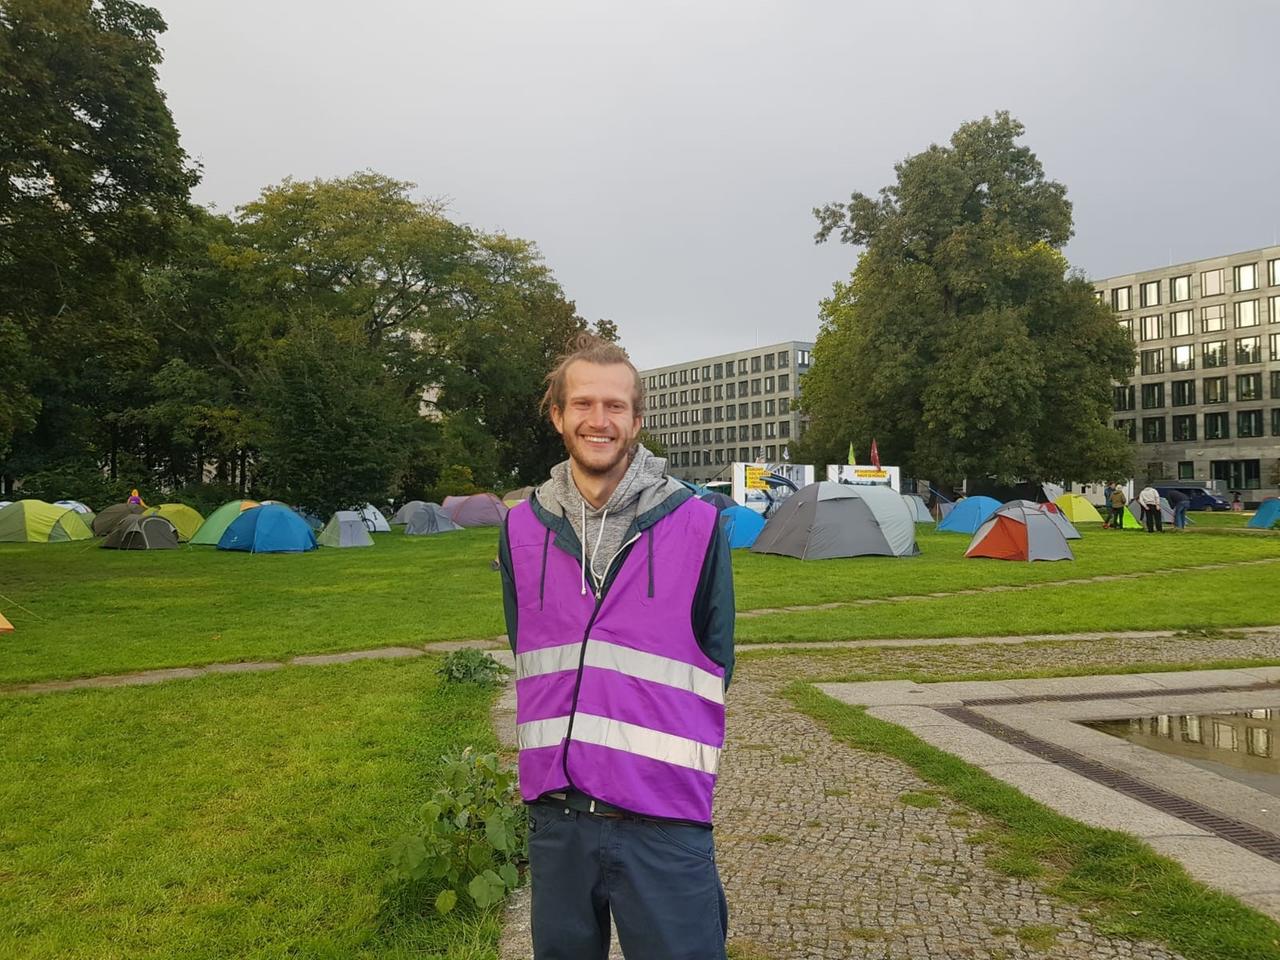 Aktivist Jan Gerber mit lila Sicherheitsweste, im Hintergrund ist ein Protestcamp zu sehen.